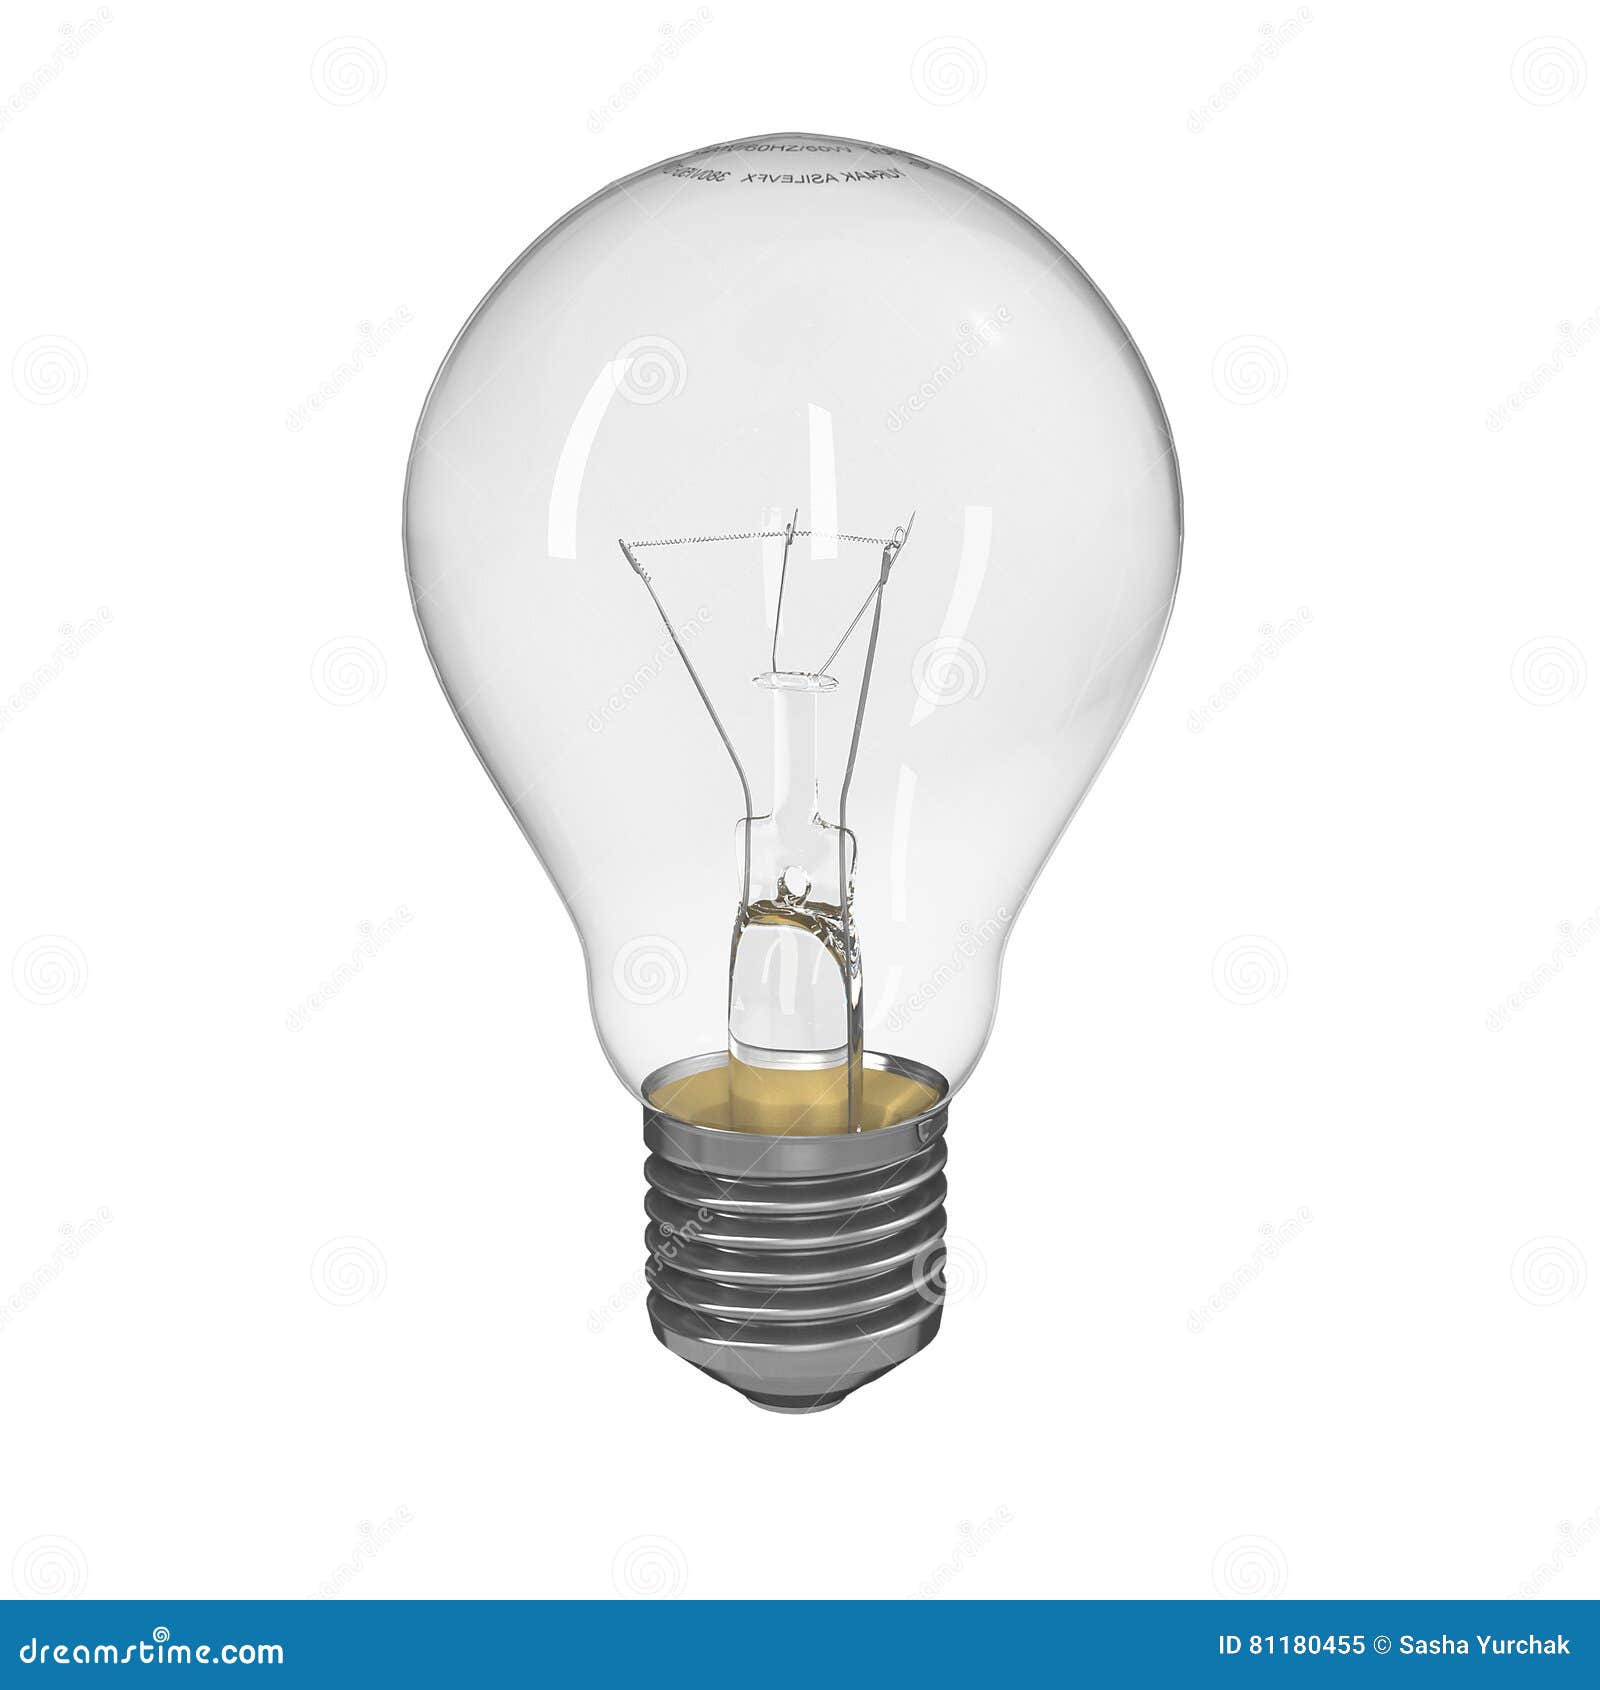 Interdire les ampoules à incandescence: une idée si lumineuse?